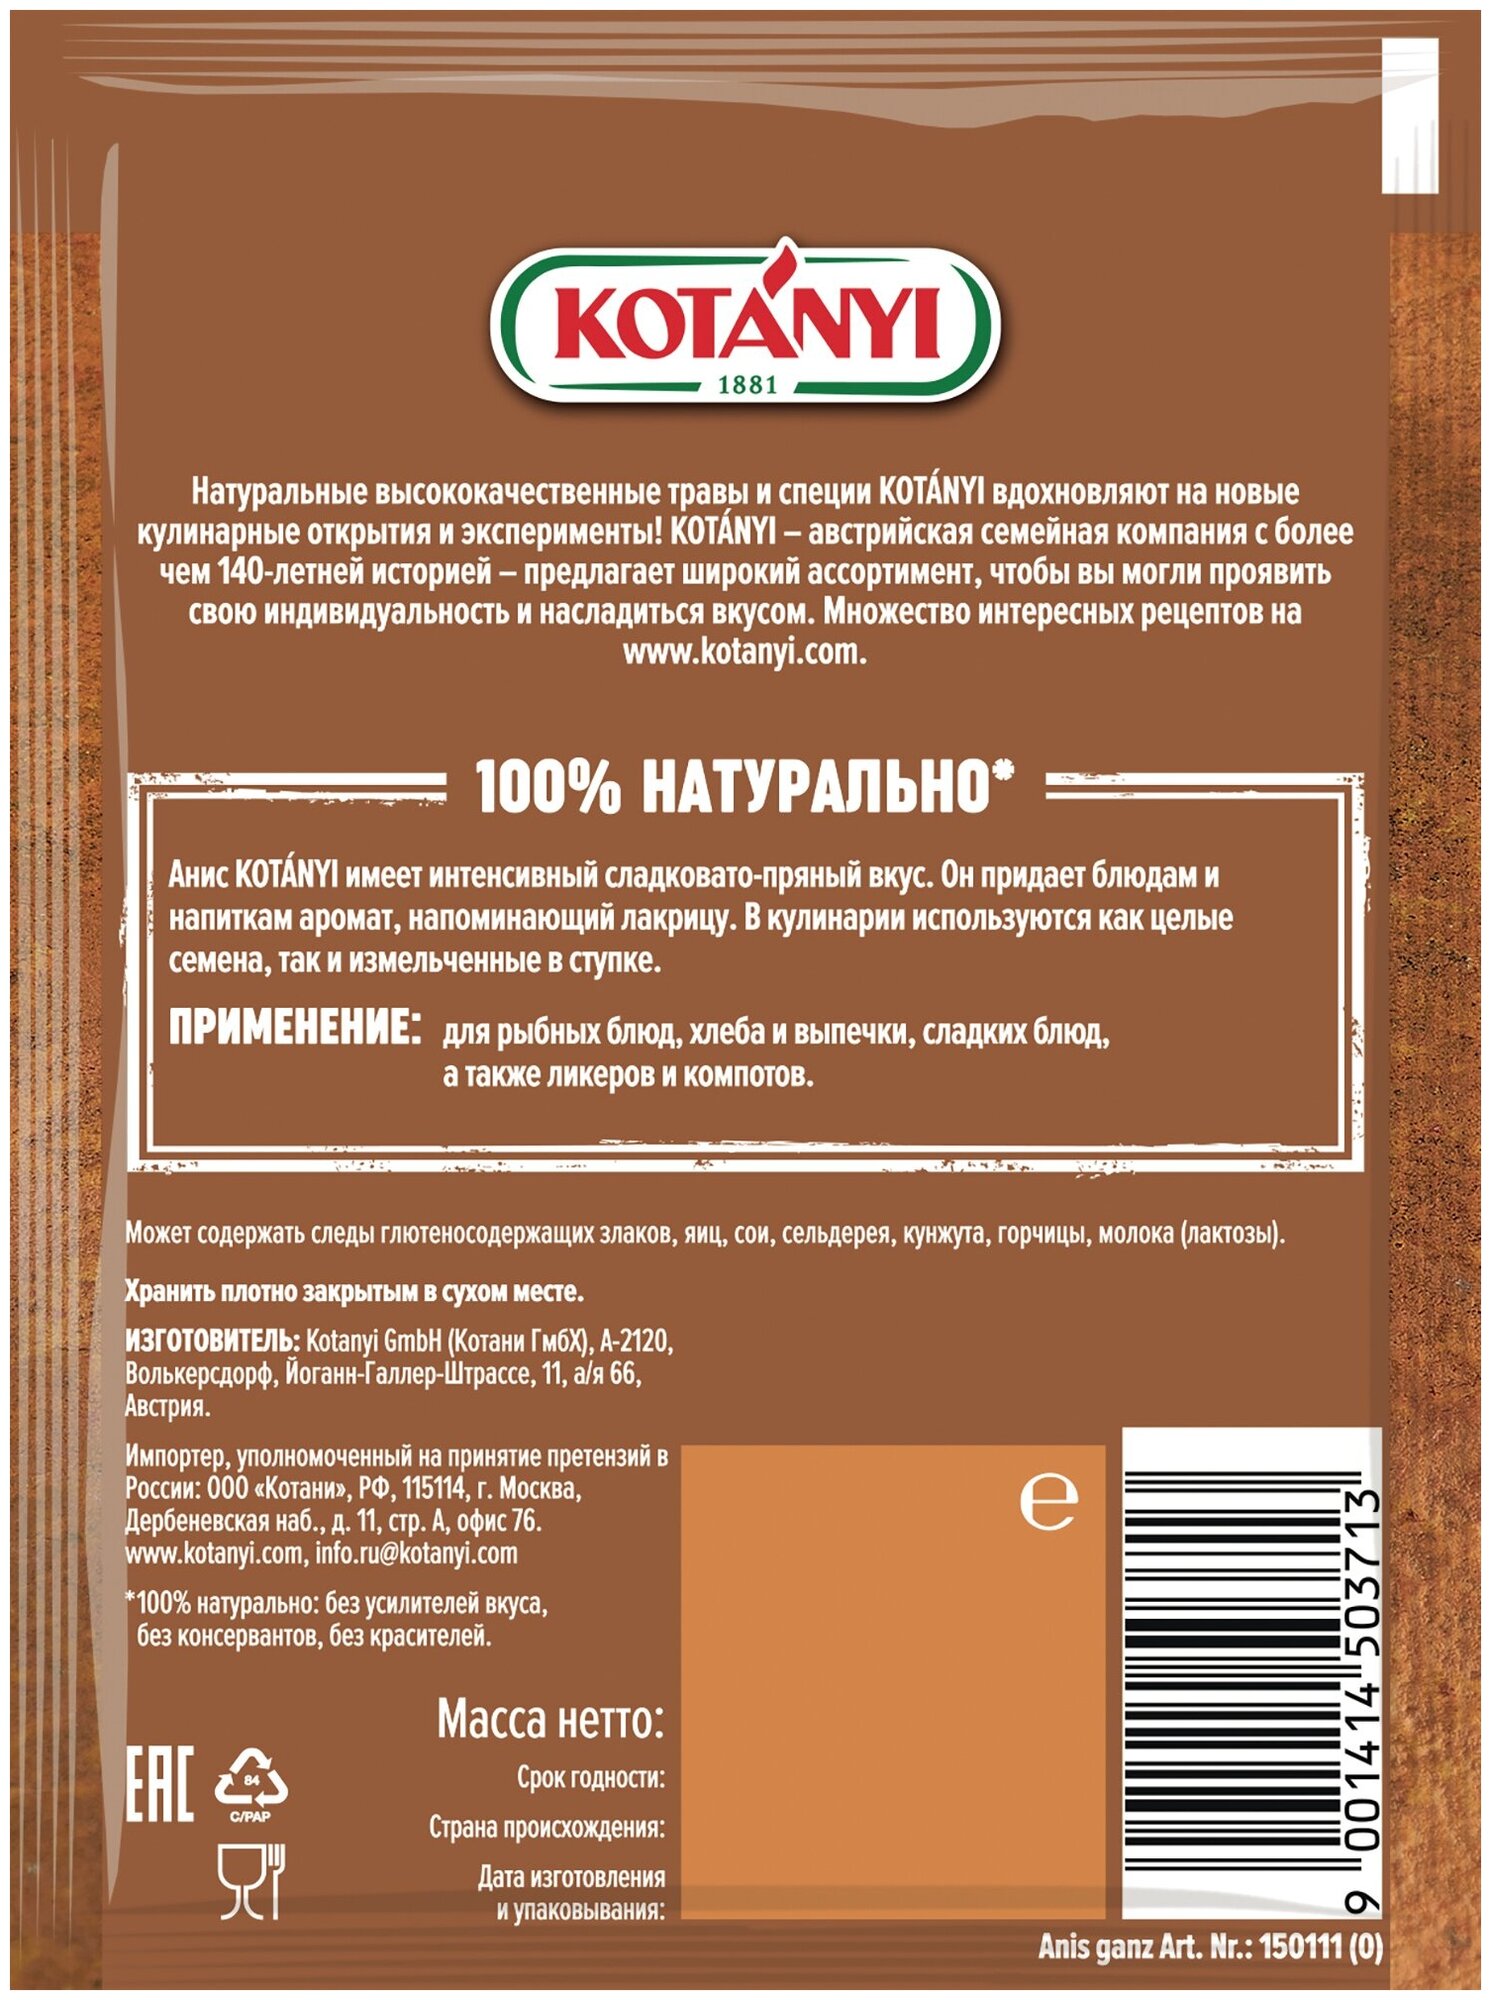 Анис семена KOTANYI, пакет 25г - 3 пакетика